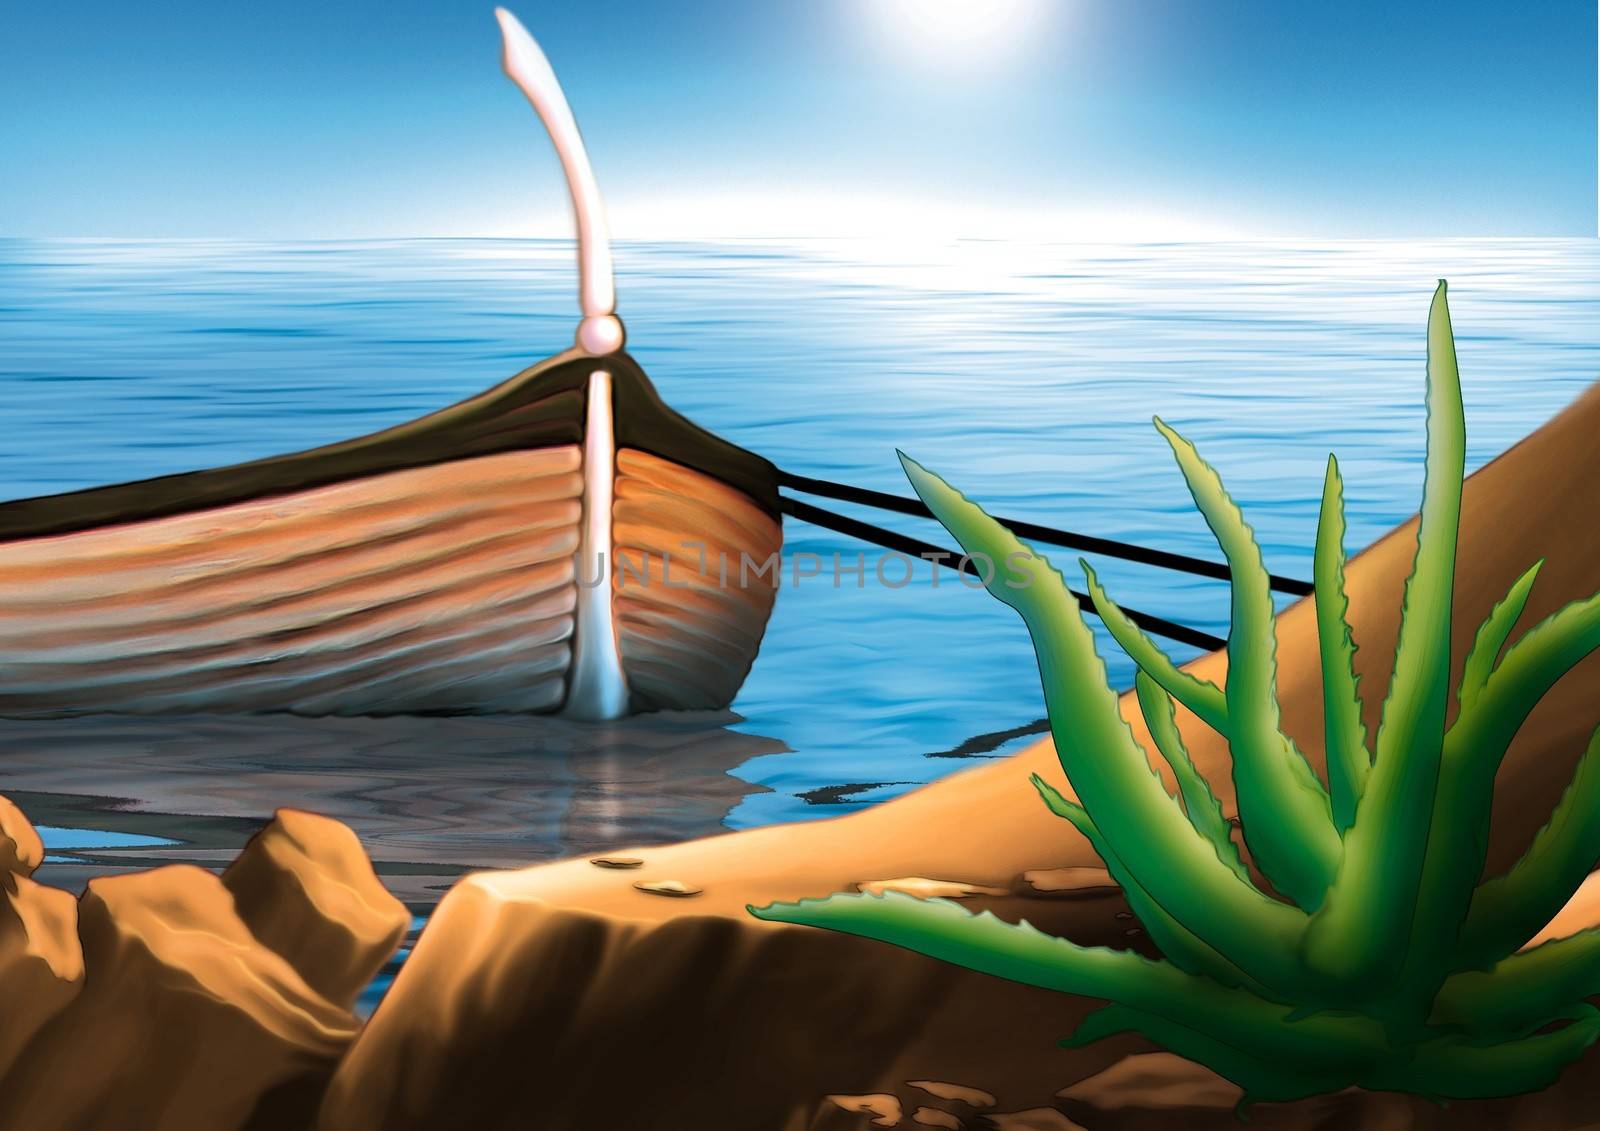 Fishing Boat by illustratorCZ